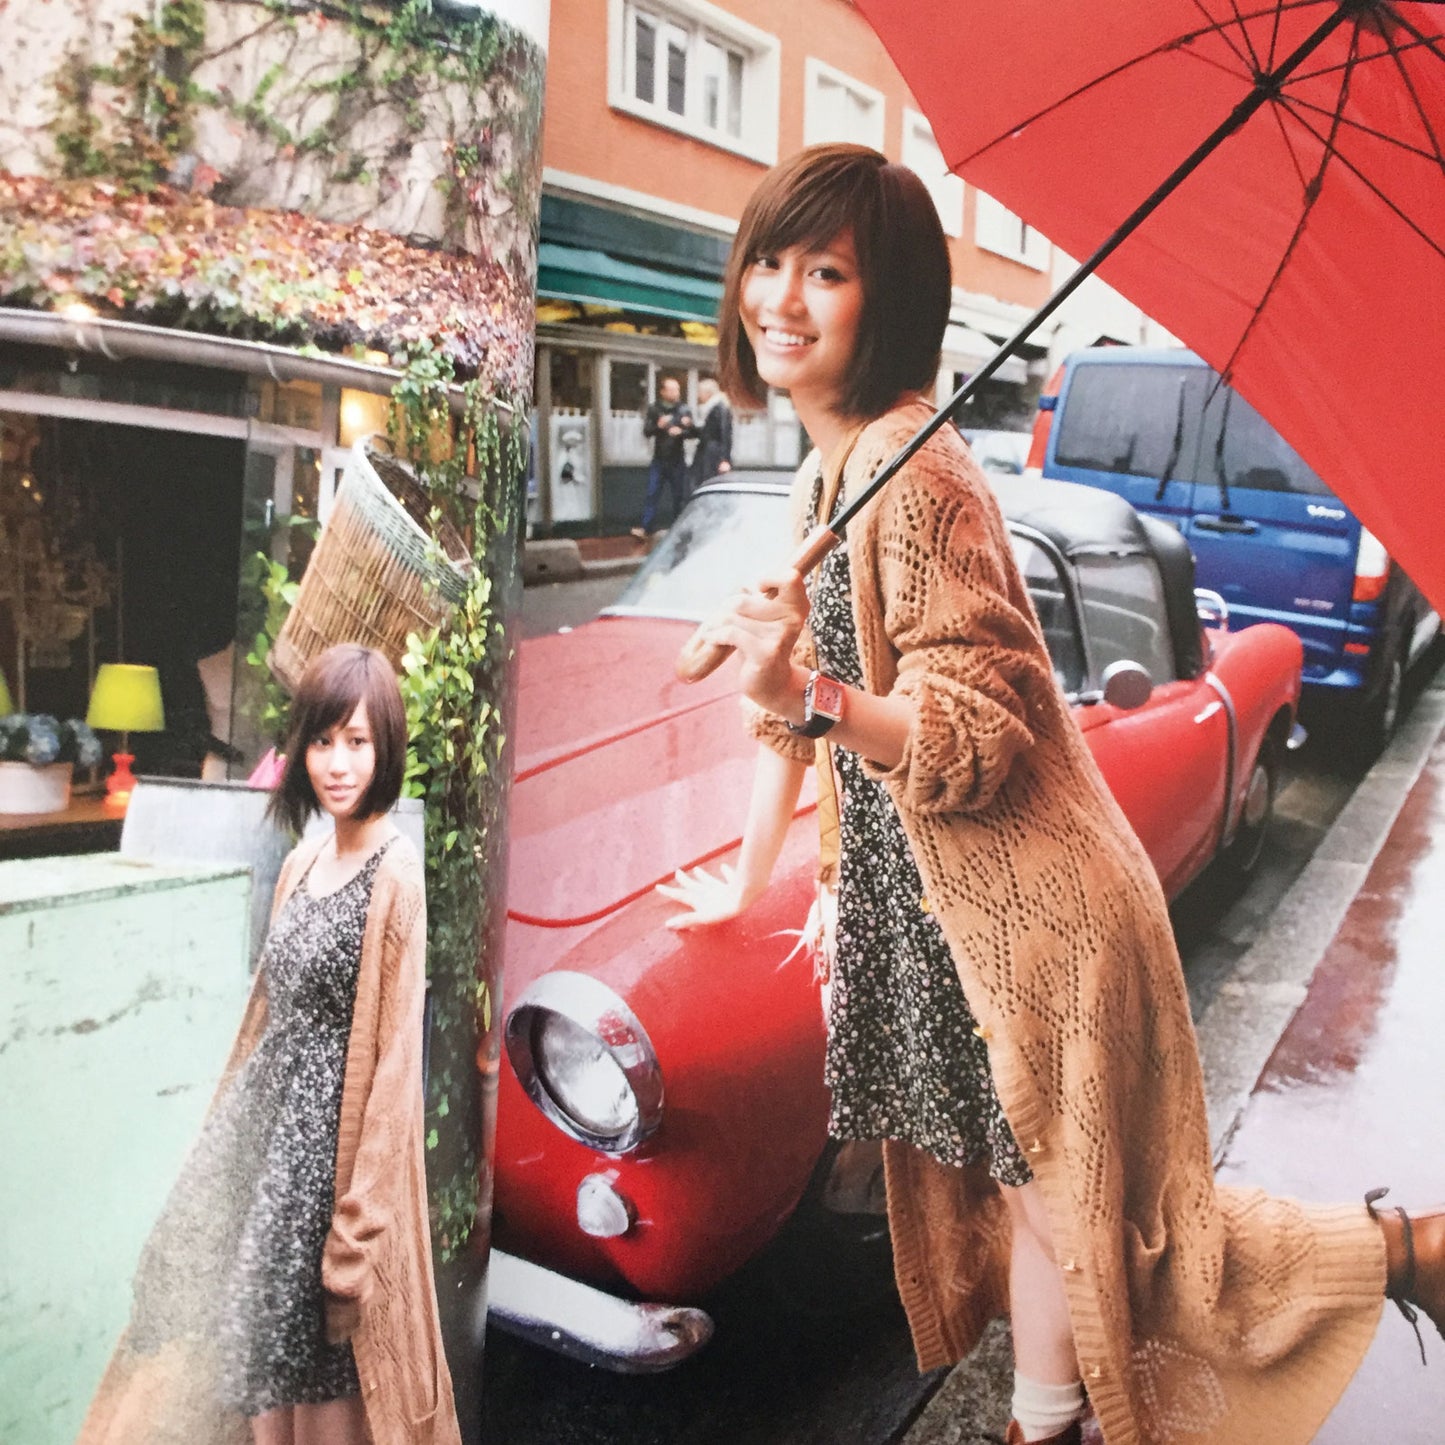 Atsuko Maeda Photo Book "bukiyo" / AKB48